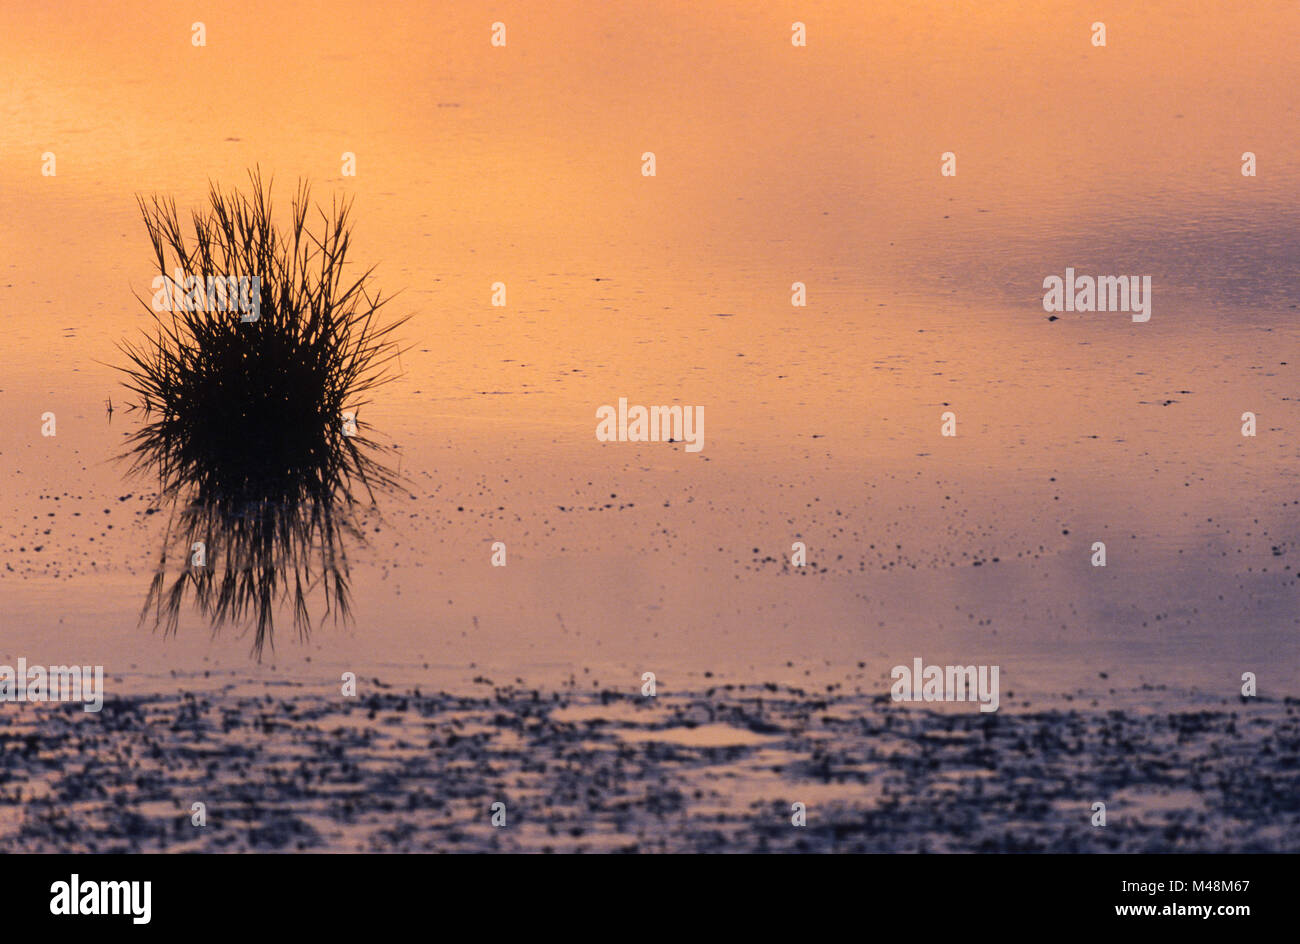 Common Cord-grass in Wadden Sea at North Sea coast Stock Photo